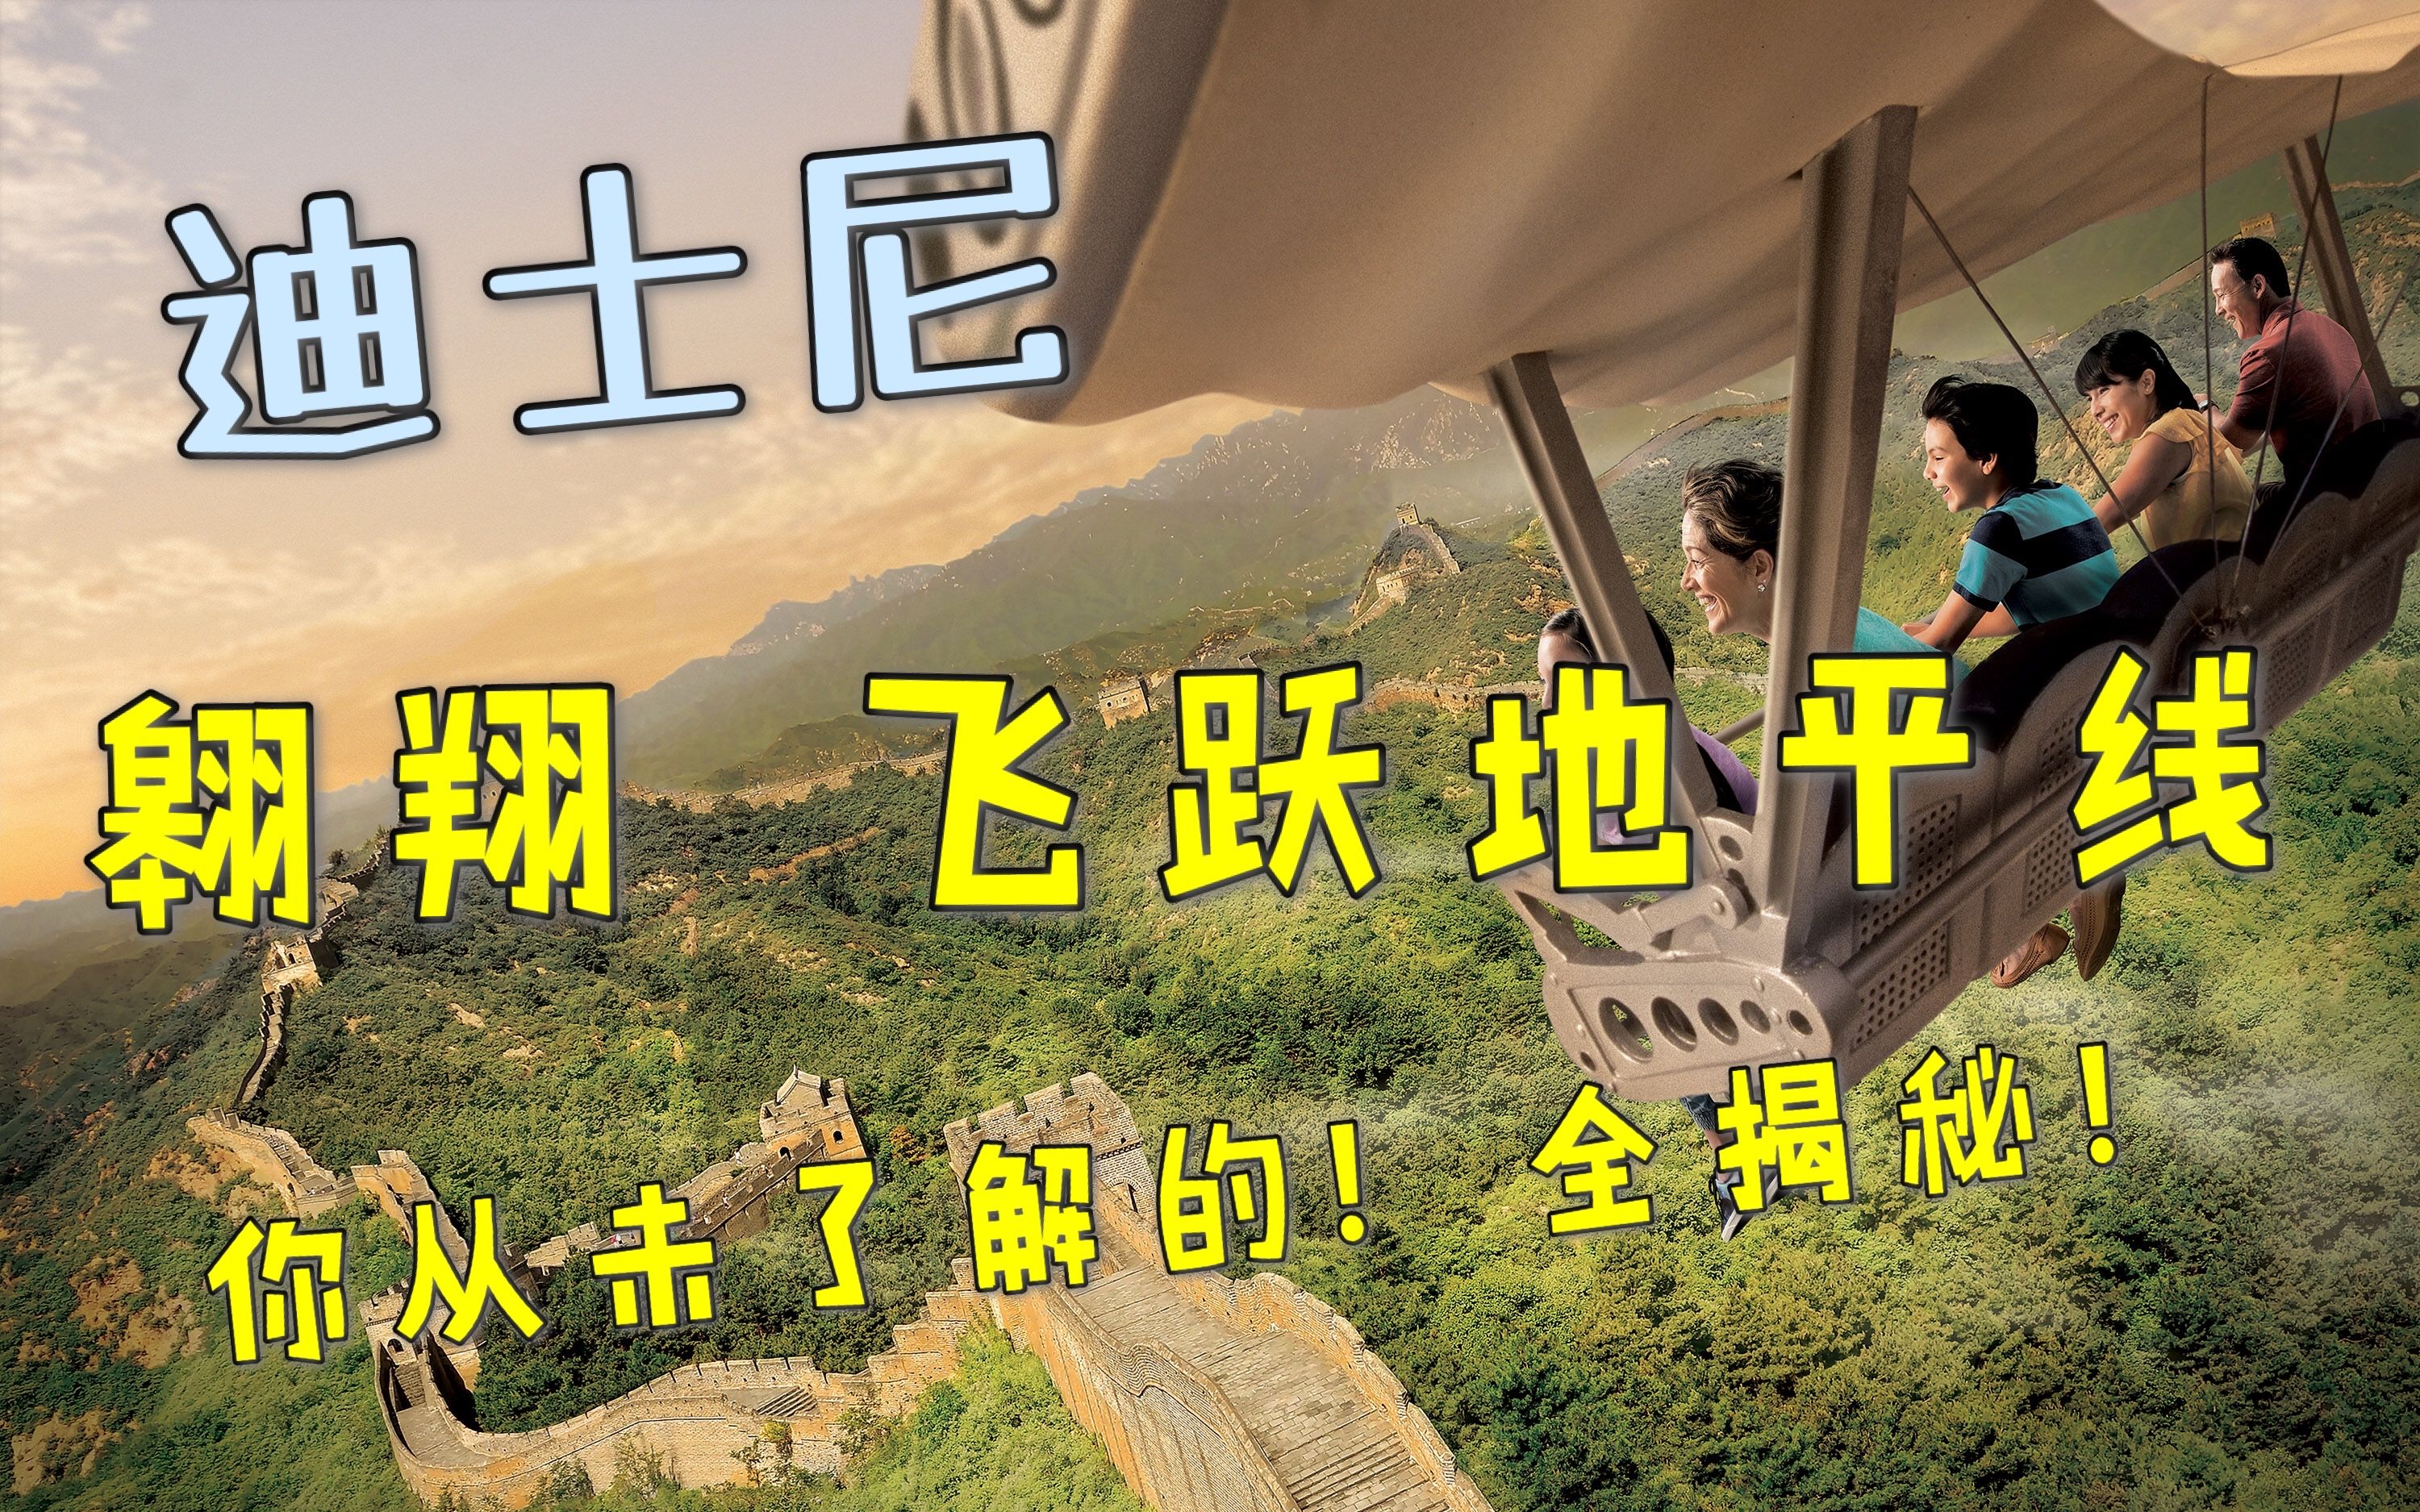 【携程攻略】上海上海迪士尼度假区景点,最喜欢飞越地平线，创极速光轮太刺激，小矮人矿车也好玩，喷气背包升…